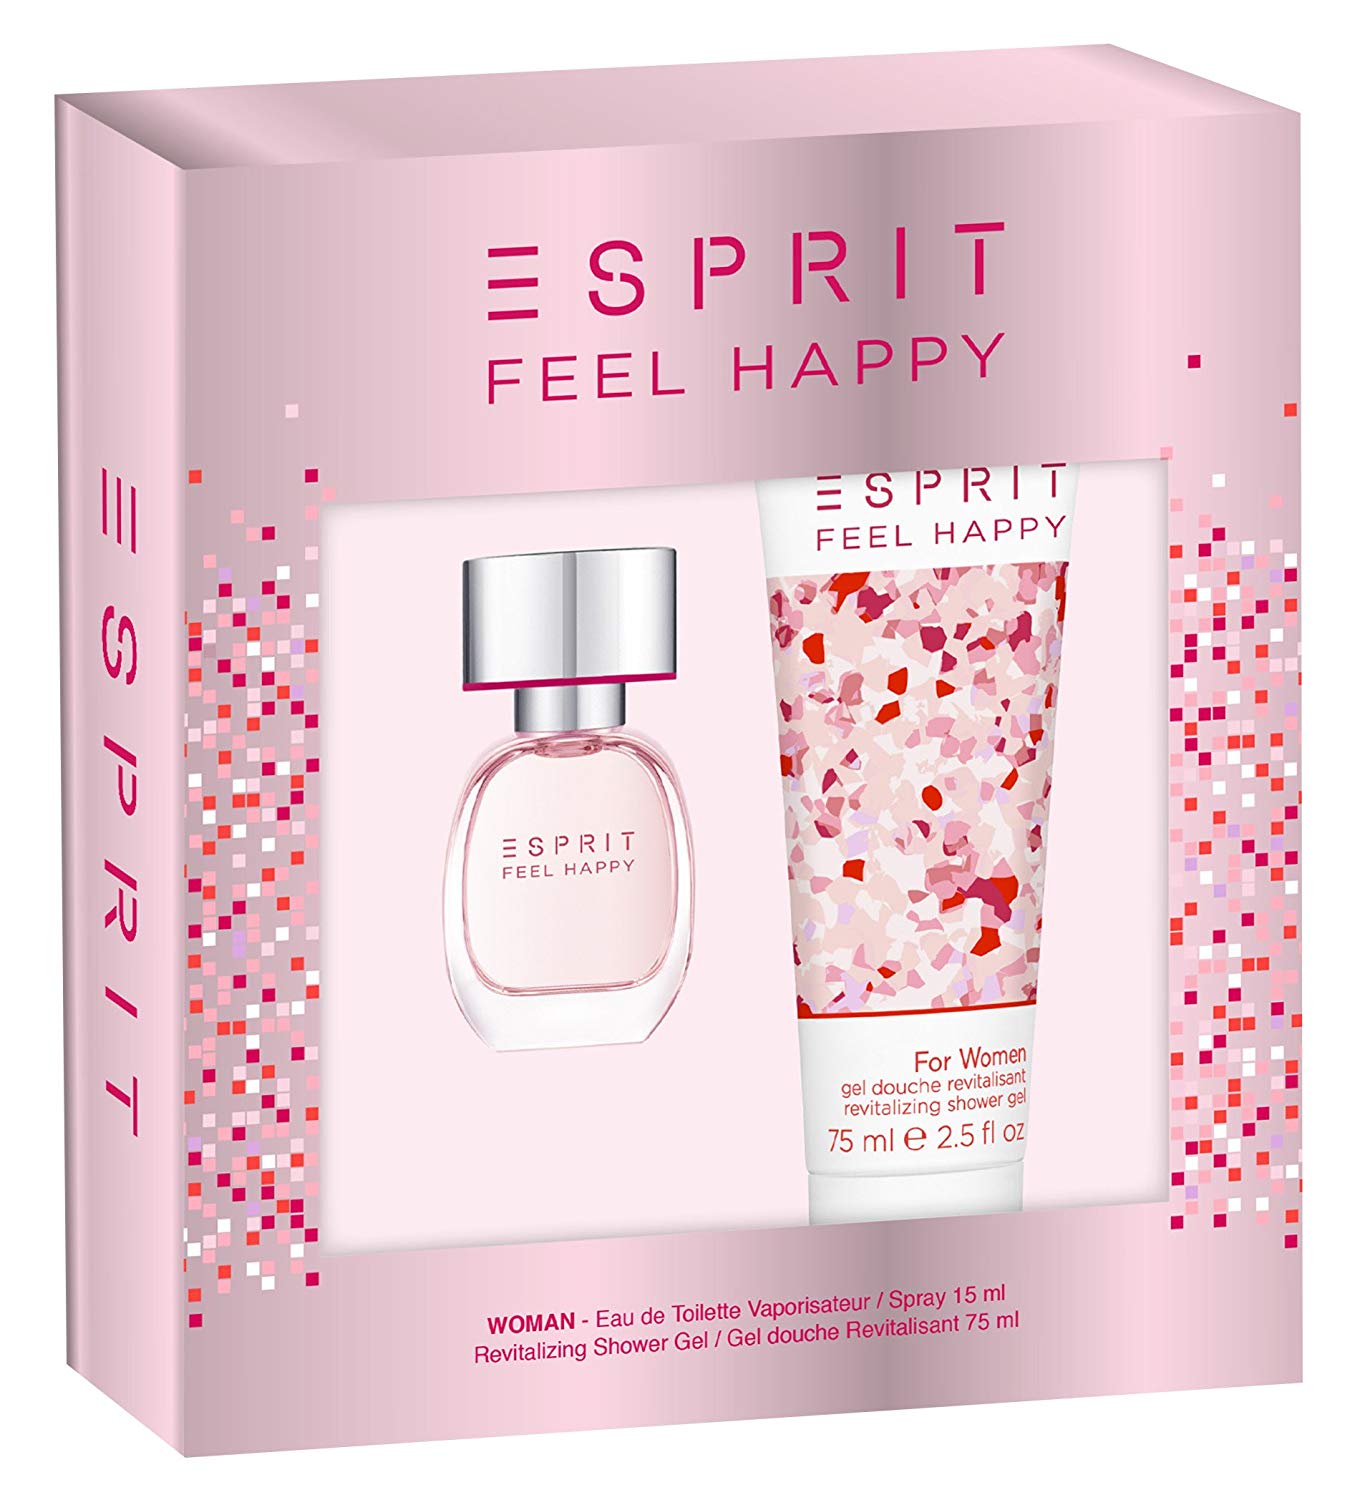 Esprit Feel Happy for Women Gift Set 15ml Eau de toilette EDT + 75ml Shower Gel